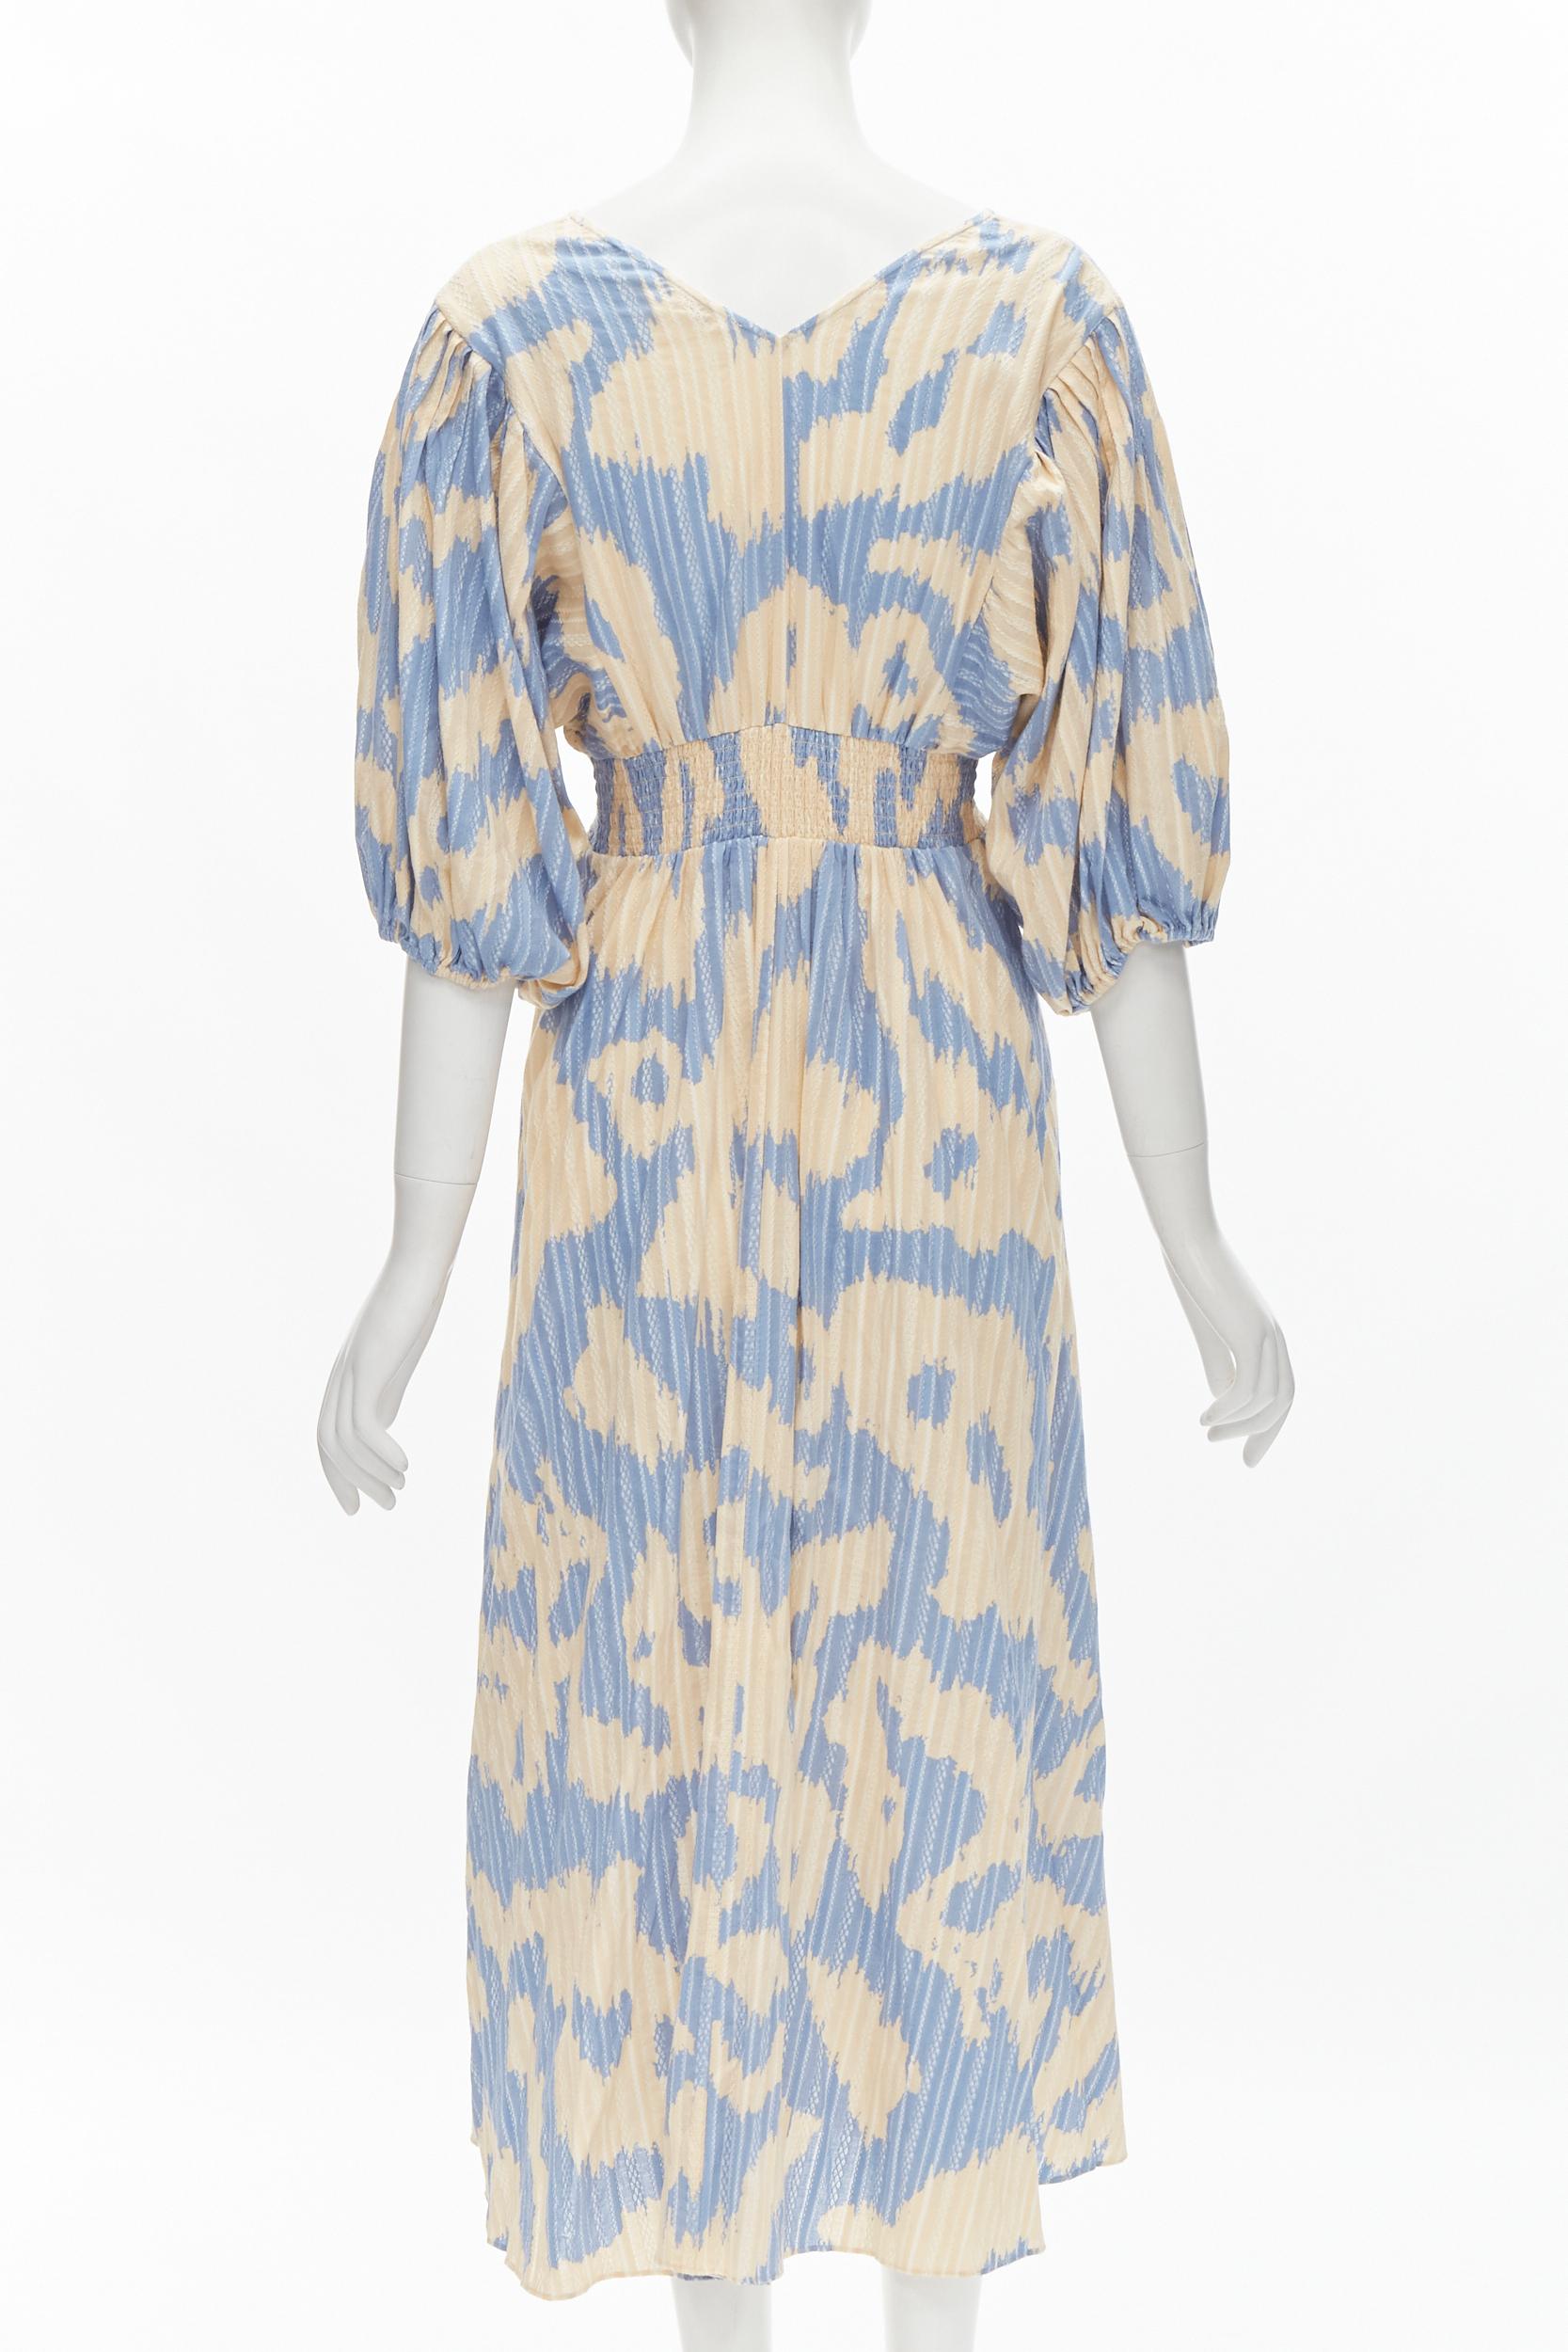 DIANE VON FURSTENBERG beige blue print lattice embroidery puff sleeve dress US8 For Sale 1